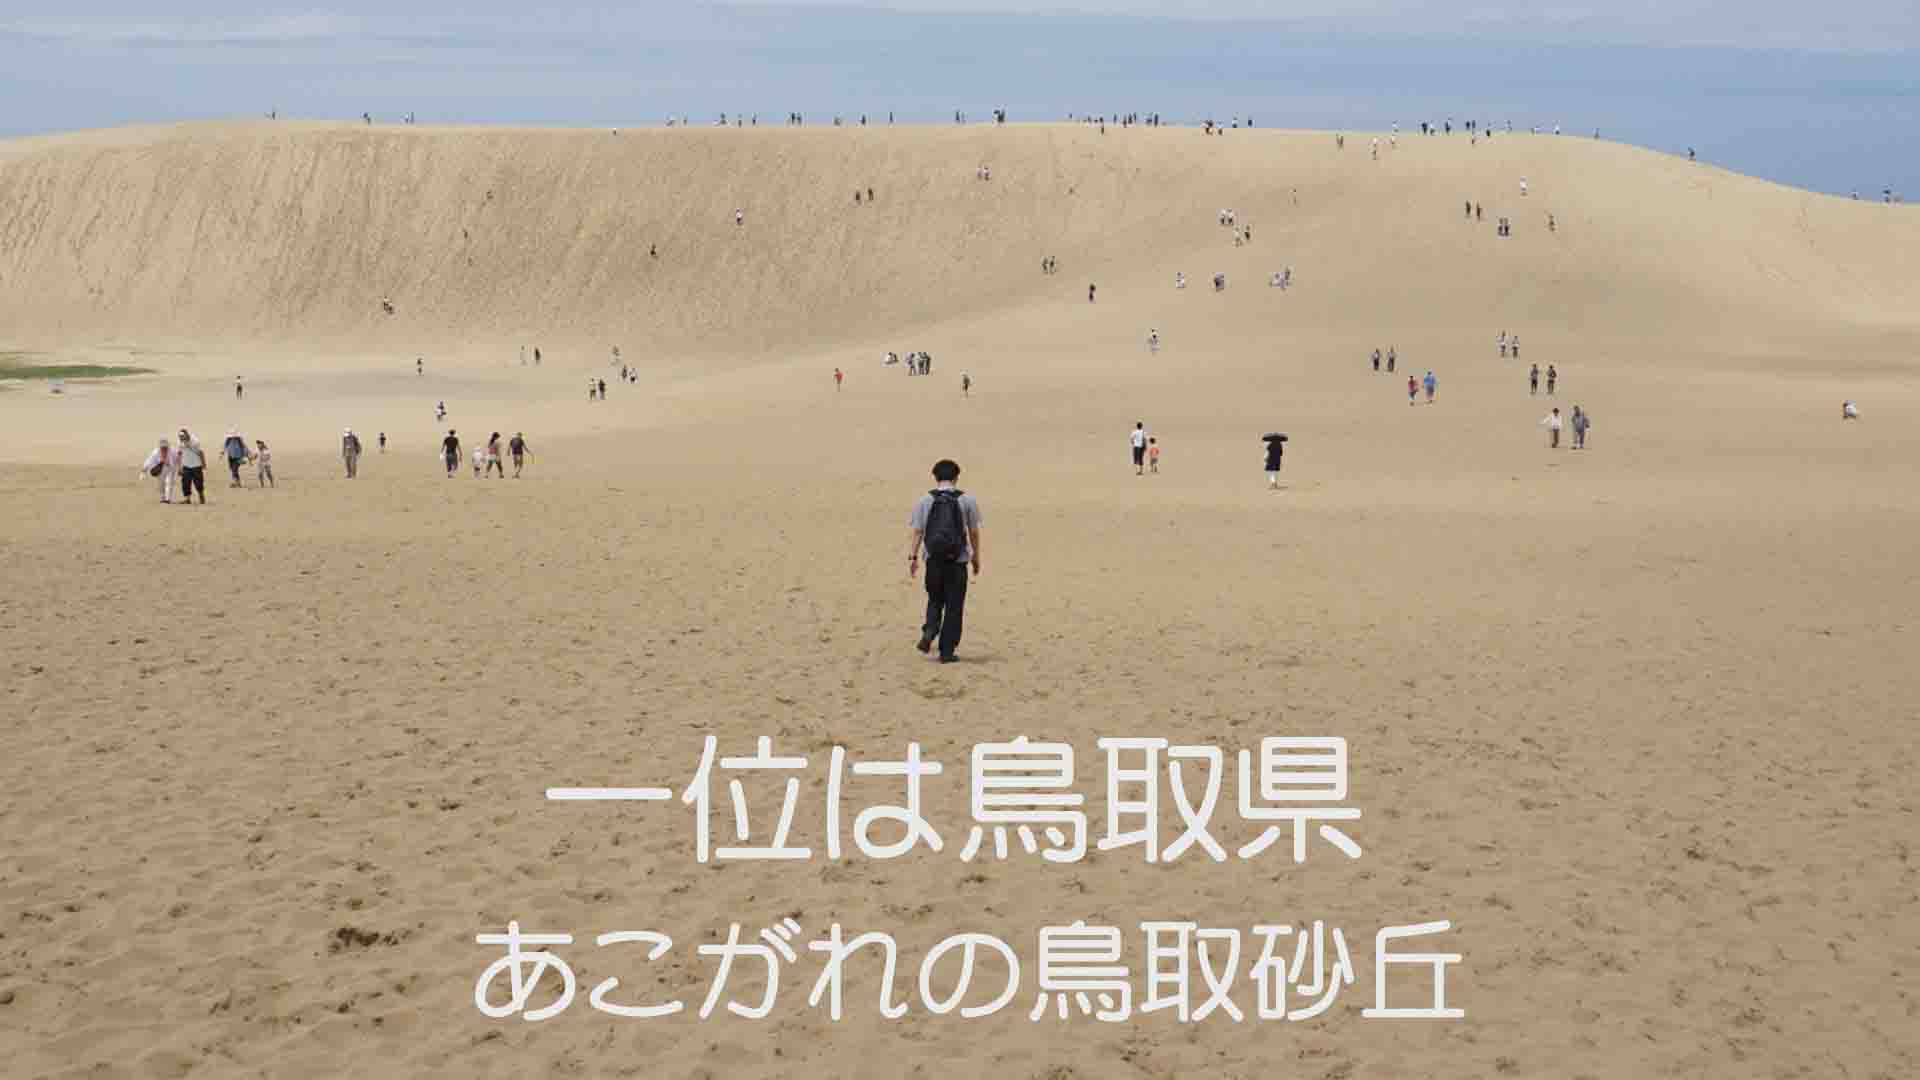 一位は鳥取県・あこがれの鳥取砂丘